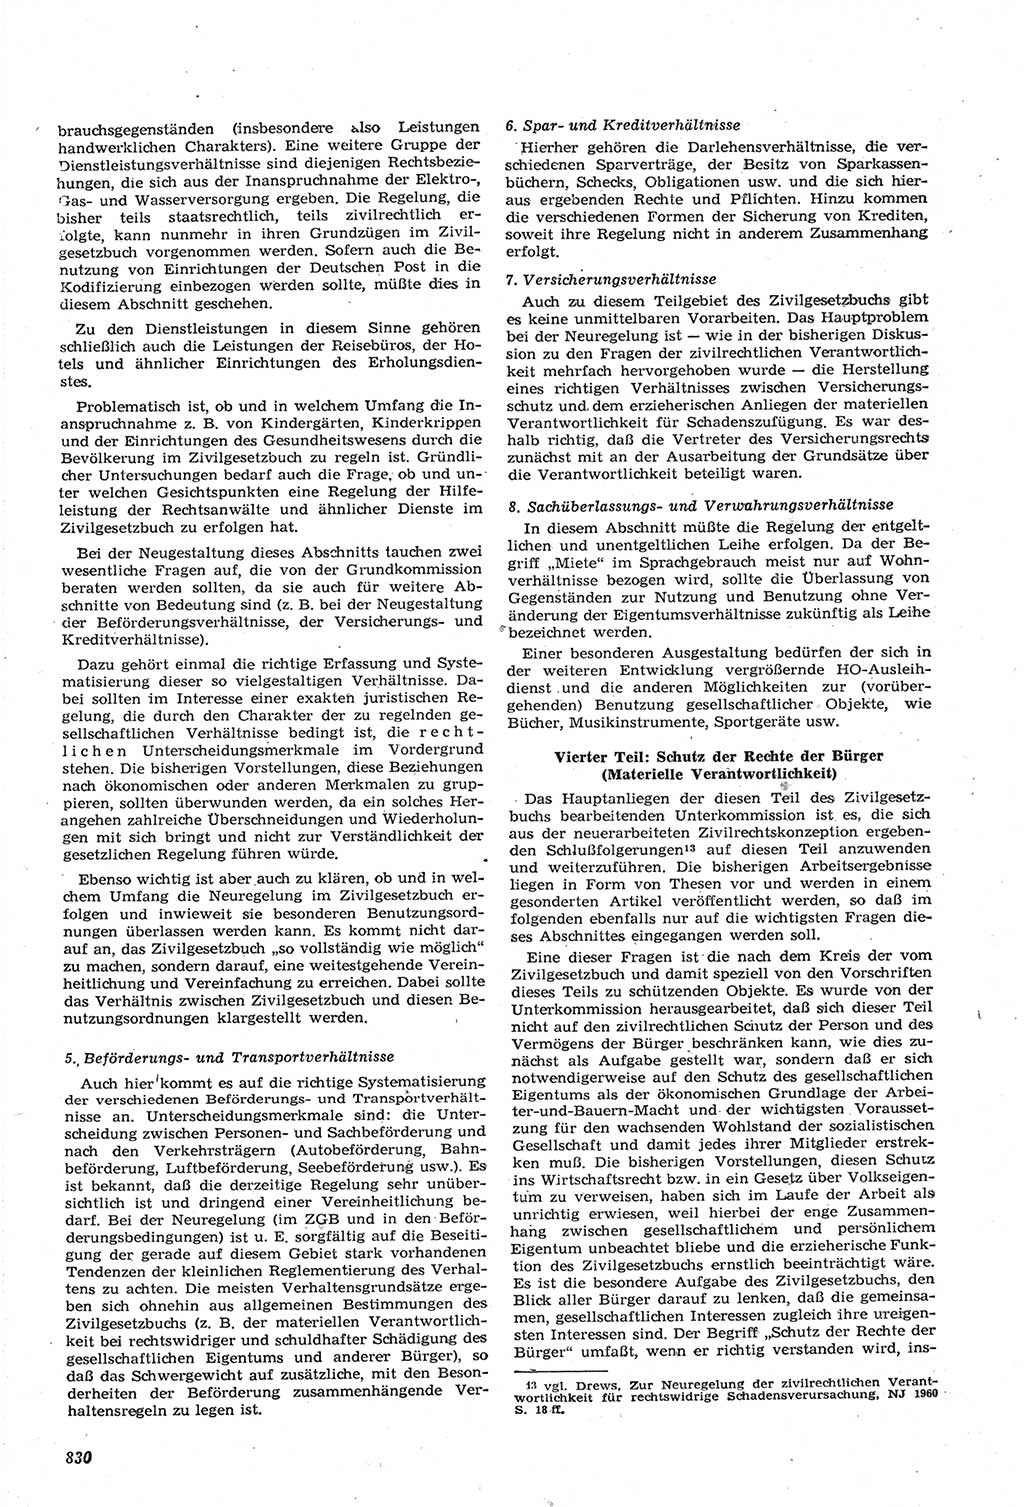 Neue Justiz (NJ), Zeitschrift für Recht und Rechtswissenschaft [Deutsche Demokratische Republik (DDR)], 14. Jahrgang 1960, Seite 830 (NJ DDR 1960, S. 830)